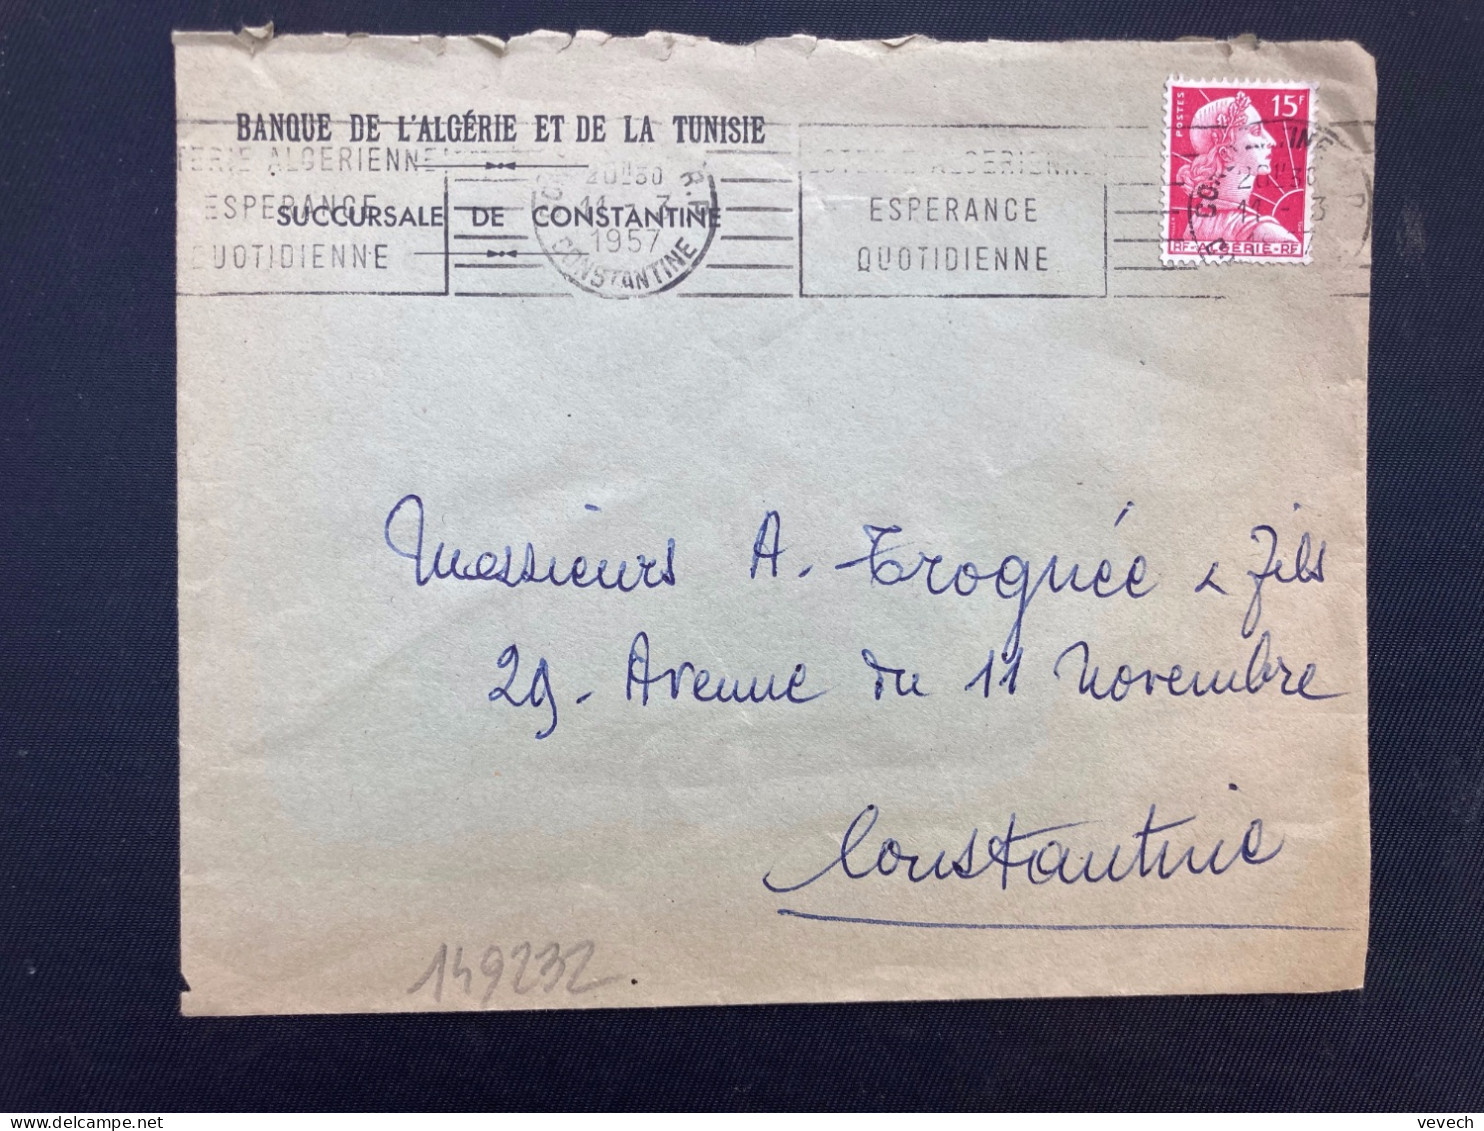 LETTRE BANQUE DE L'ALGERIE ET DE LA TUNISIE TP M DE MULLER 15F OBL.MEC.11-3 1957 CONSTANTINE RP - 1955-1961 Marianne Of Muller